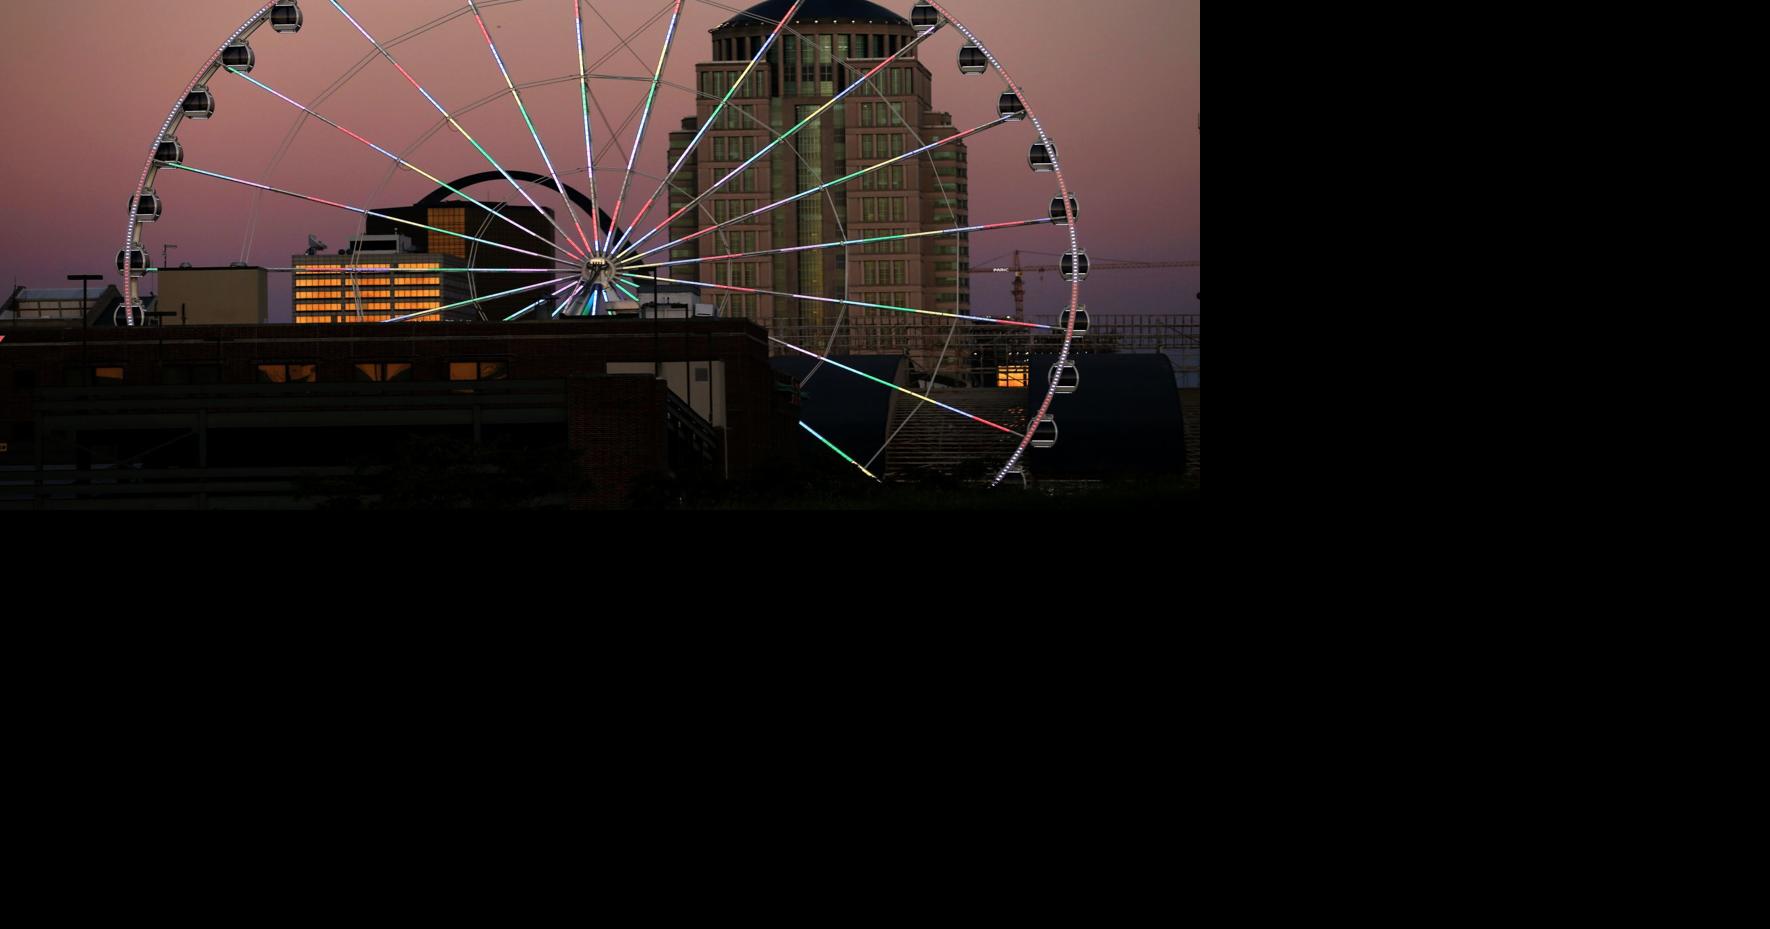 Colossus (Ferris wheel) - Wikipedia